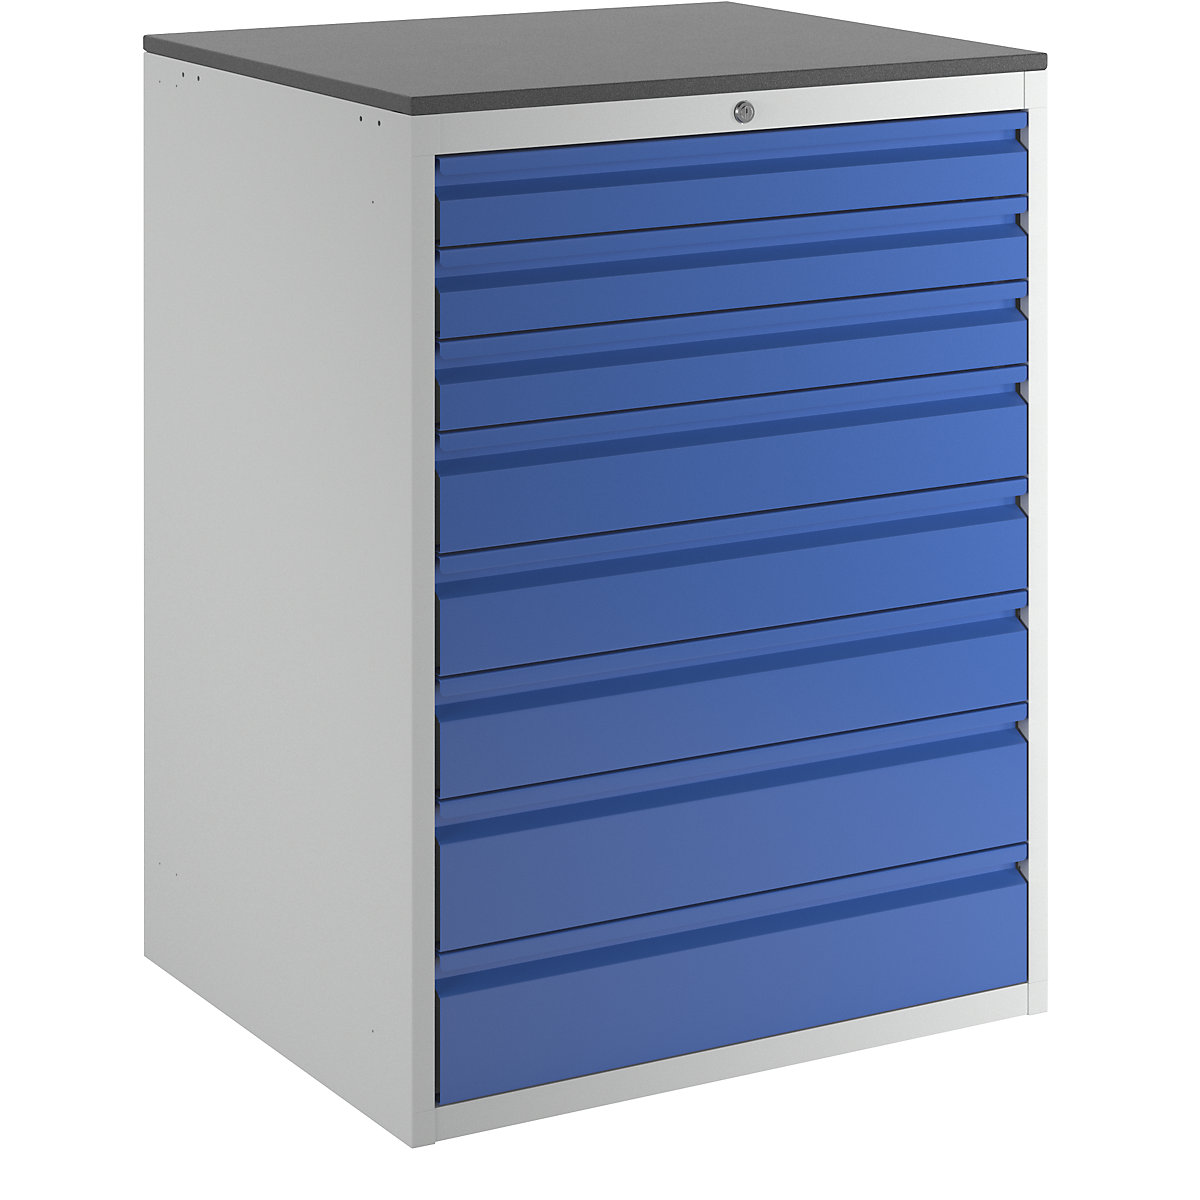 Zásuvková skříň s teleskopickými vodítky – RAU, výška 1030 mm, zásuvky 3 x 90, 3 x 120, 2 x 150 mm, světle šedá / hořcově modrá, šířka 770 mm-14